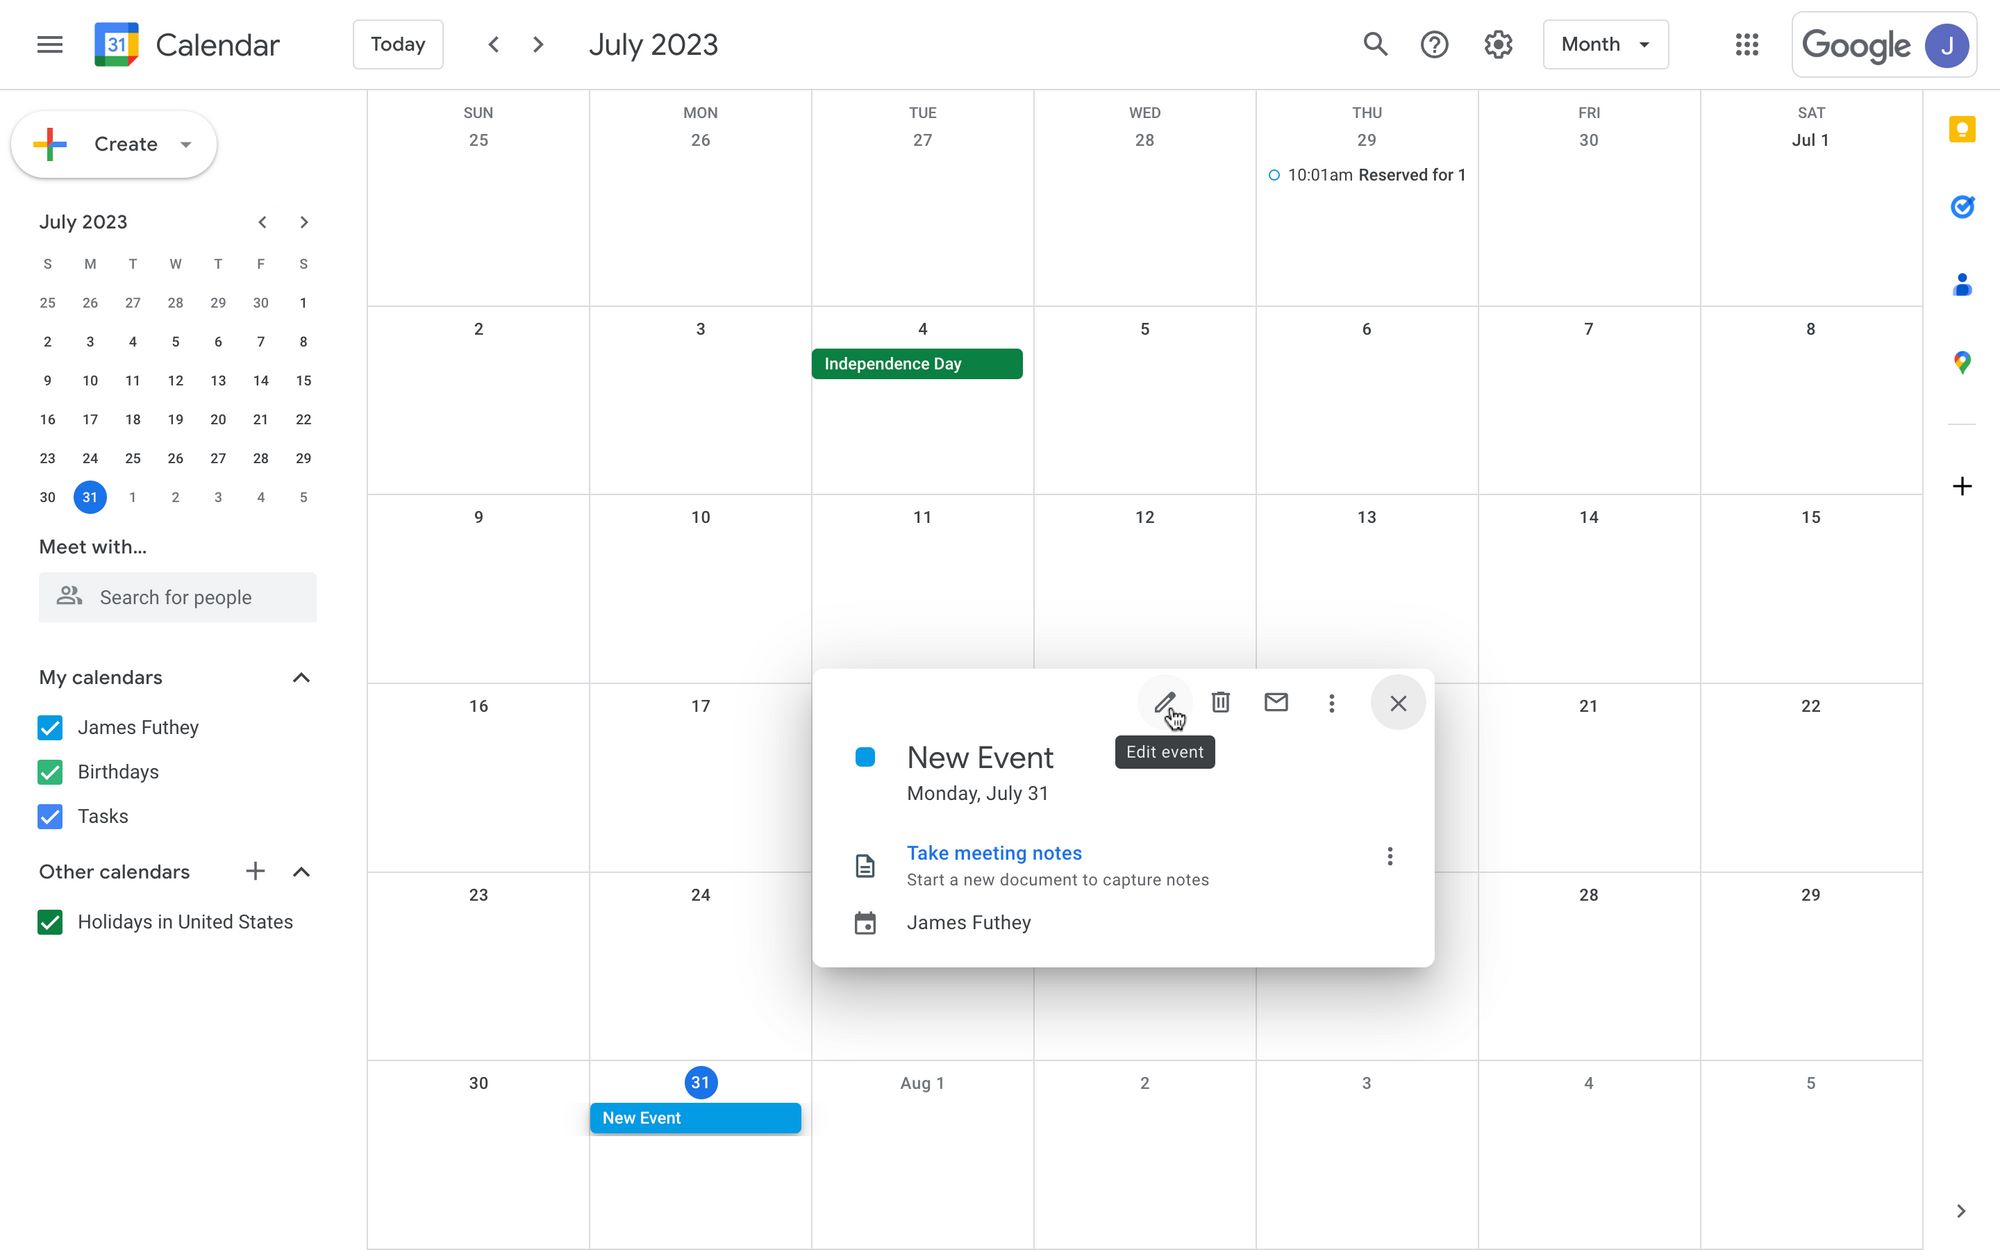 How To Forward A Google Calendar Invite